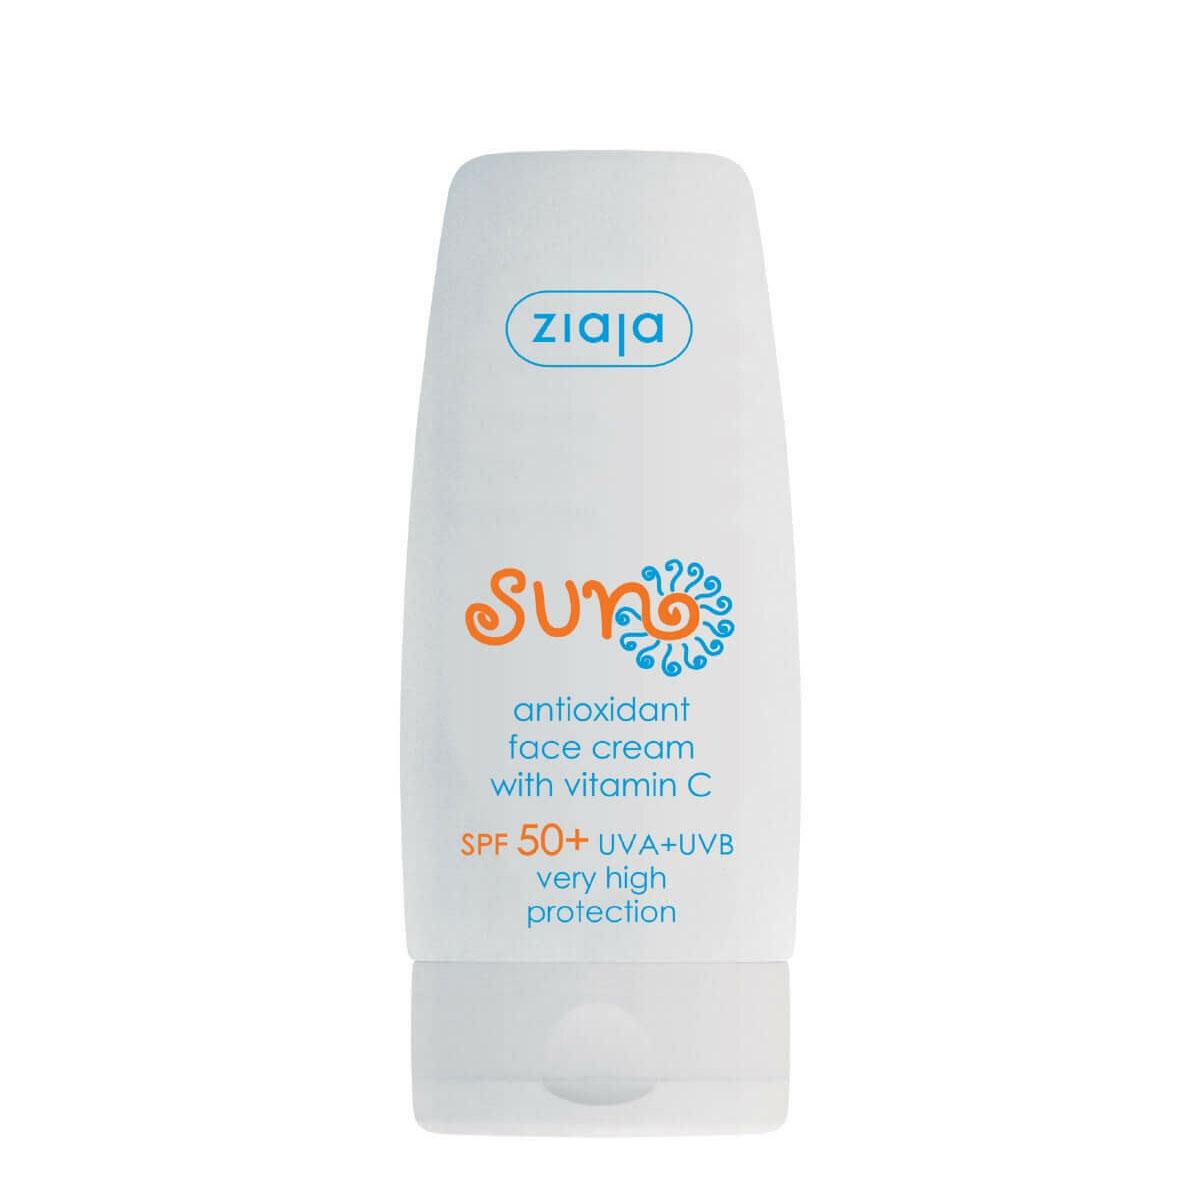 ضد آفتاب حاوی آنتی اکسیدان -  Sun Antioxidant face cream SPF50